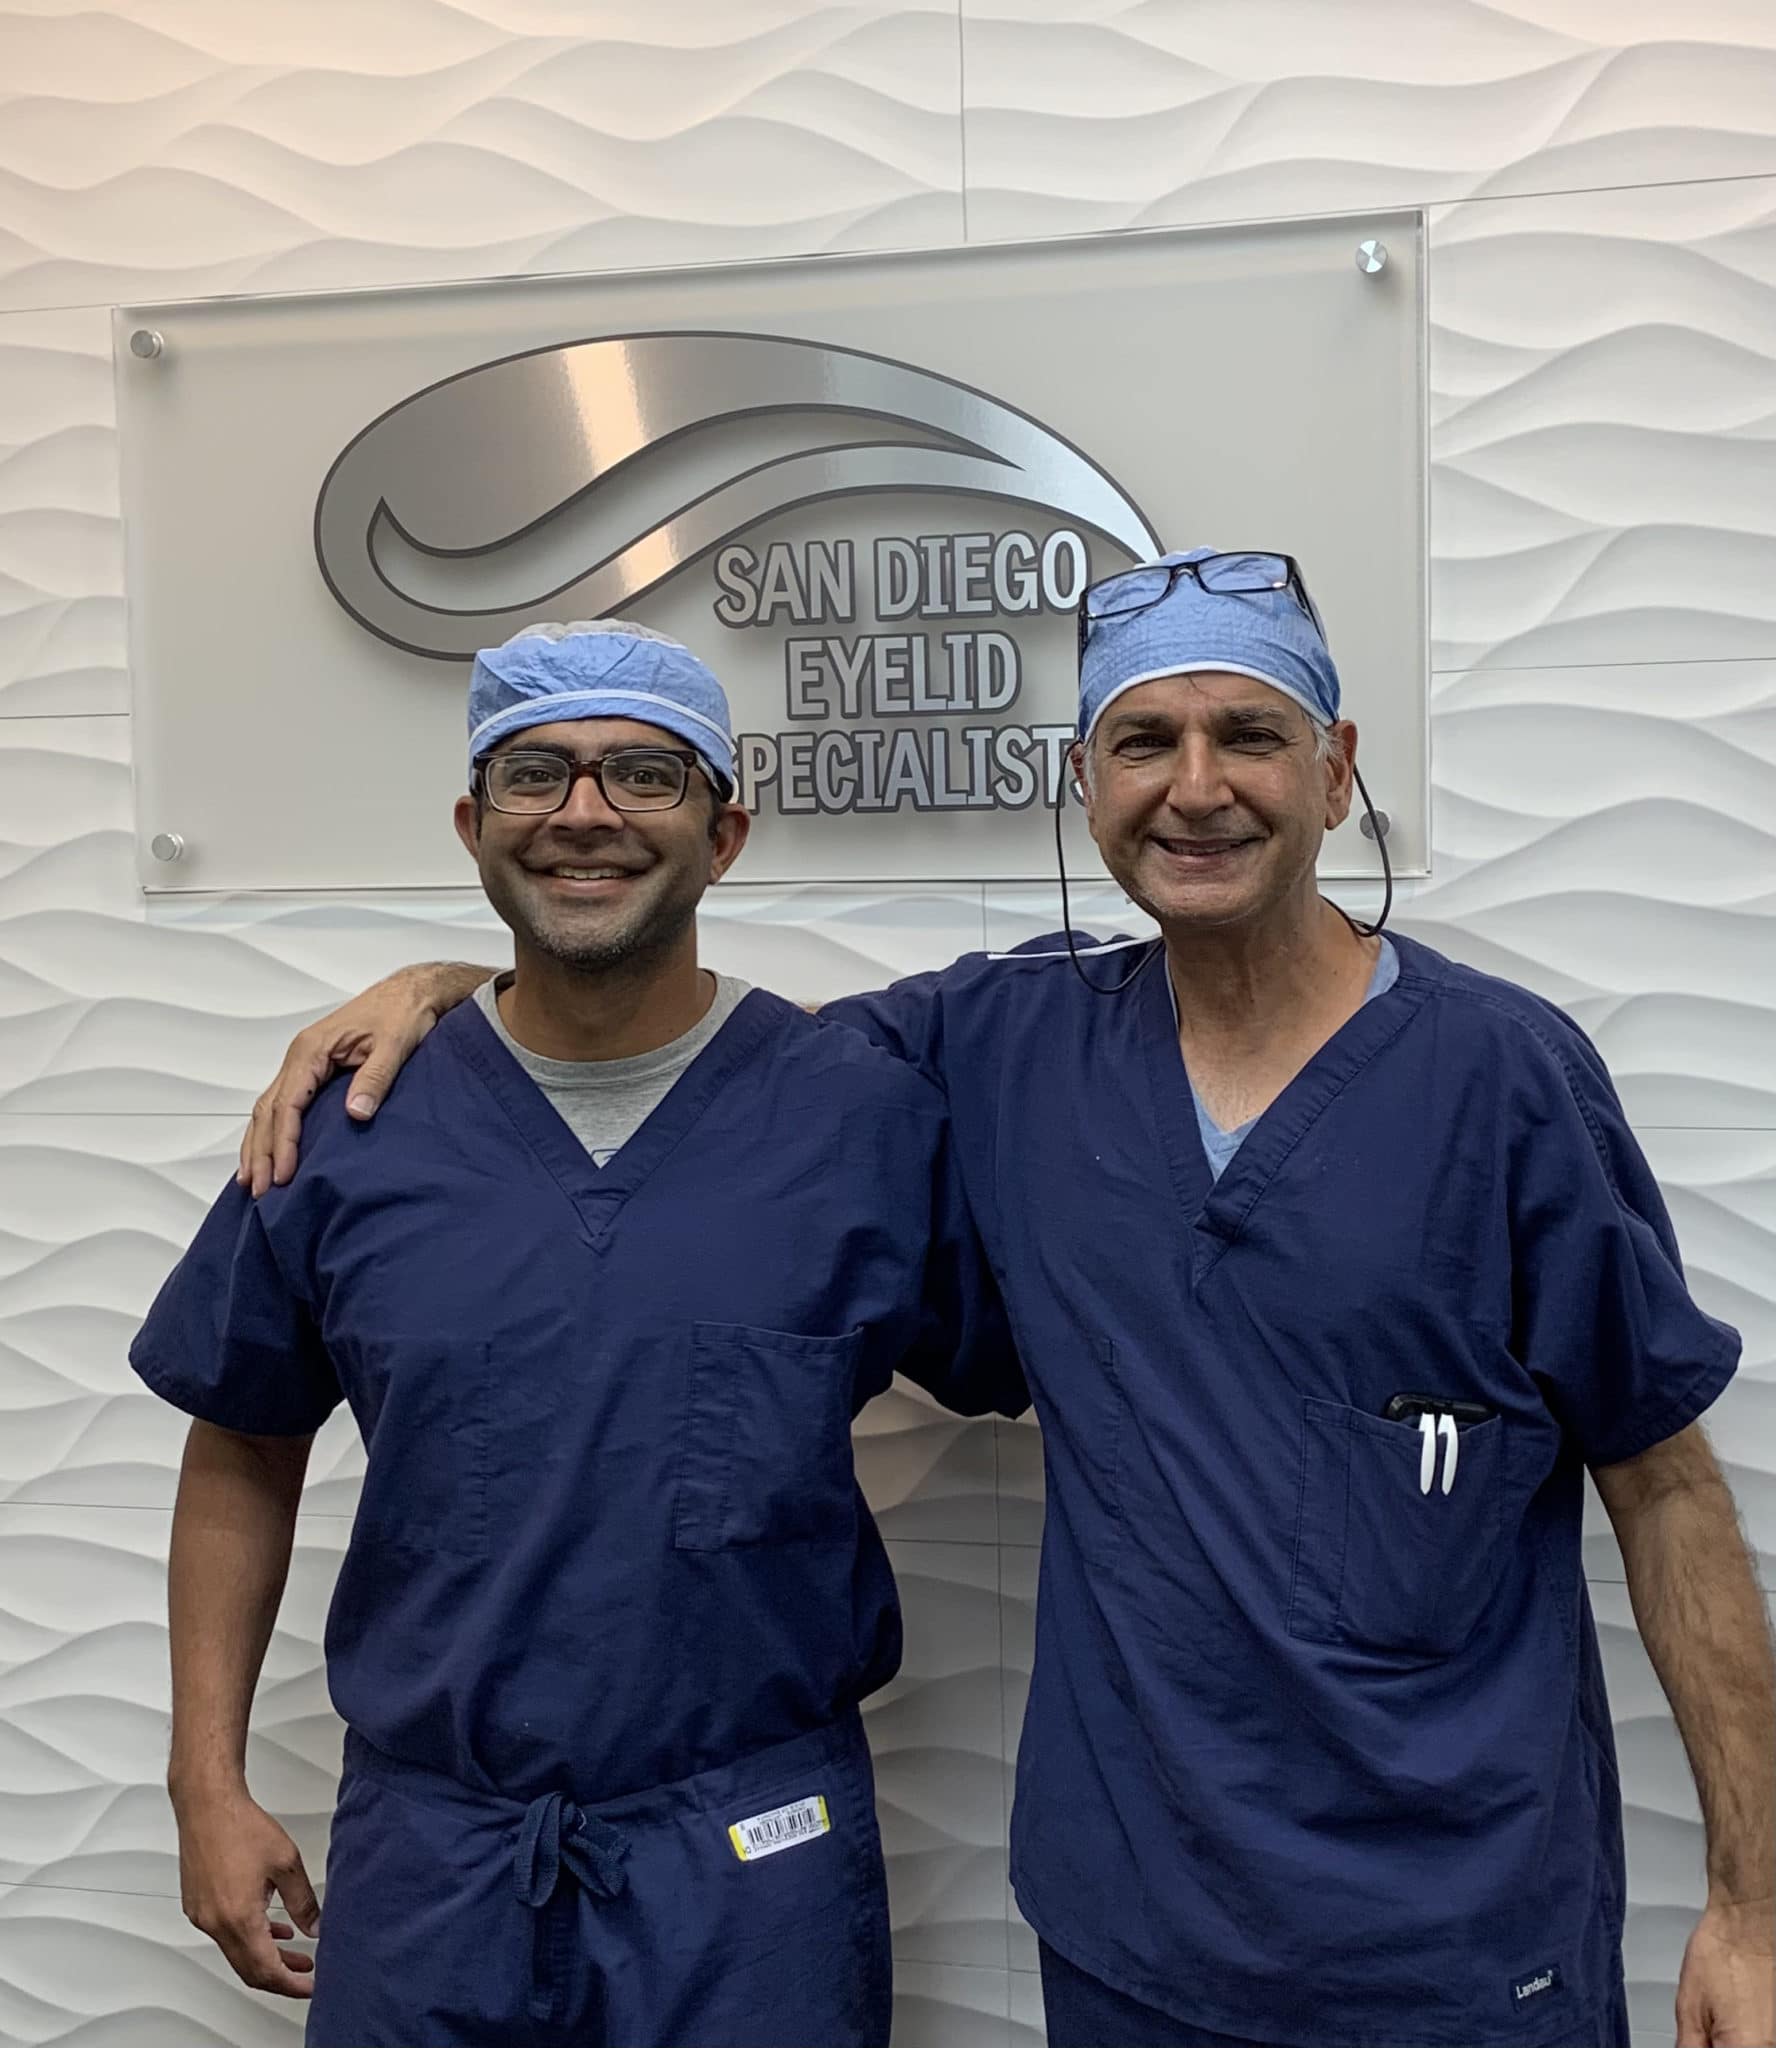 Dr. Khan and Dr. Iyengar